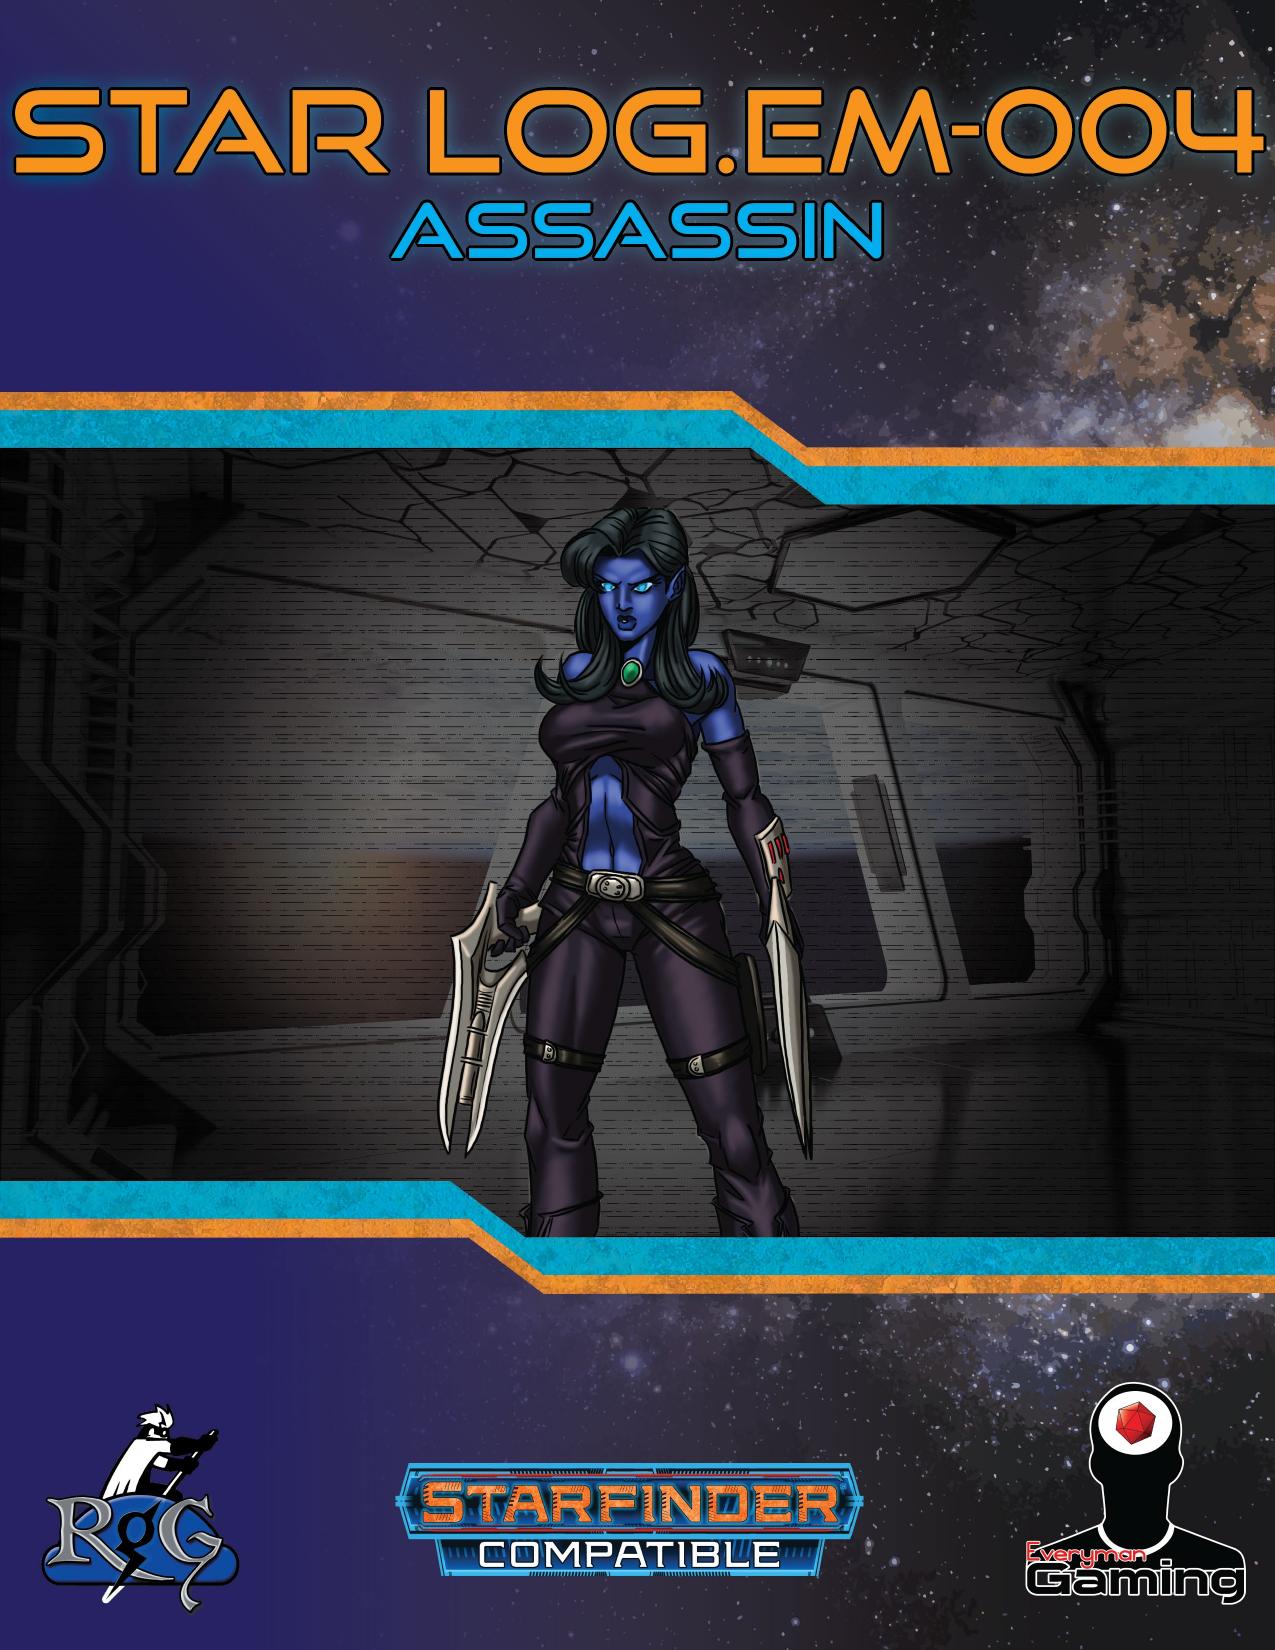 Star LogEM-004 Assassin